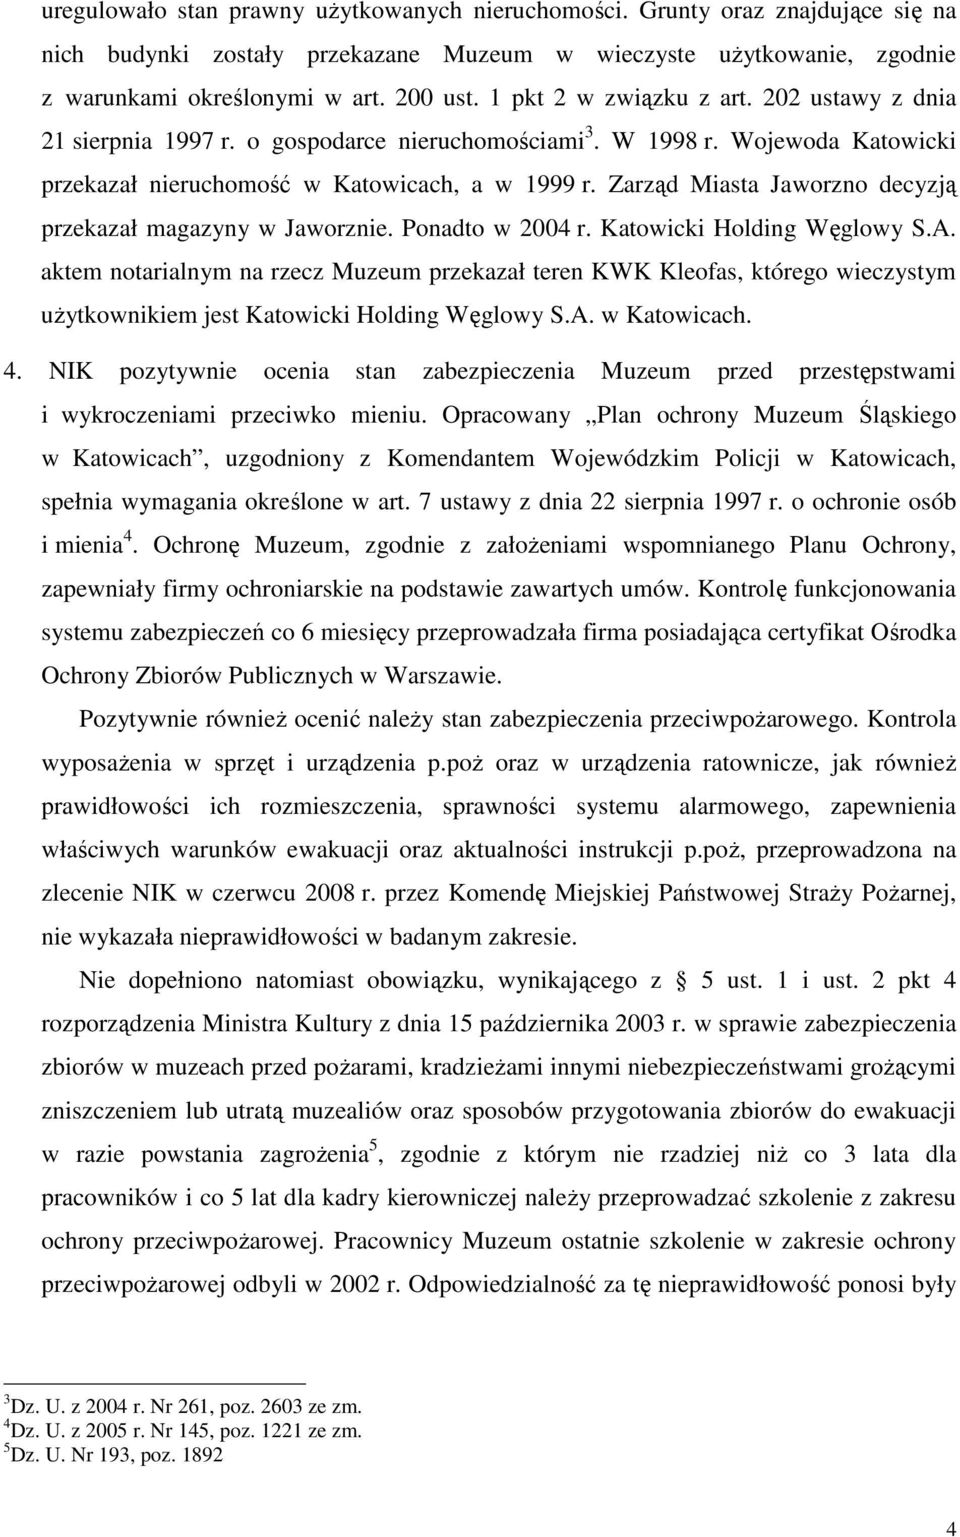 Zarząd Miasta Jaworzno decyzją przekazał magazyny w Jaworznie. Ponadto w 2004 r. Katowicki Holding Węglowy S.A.